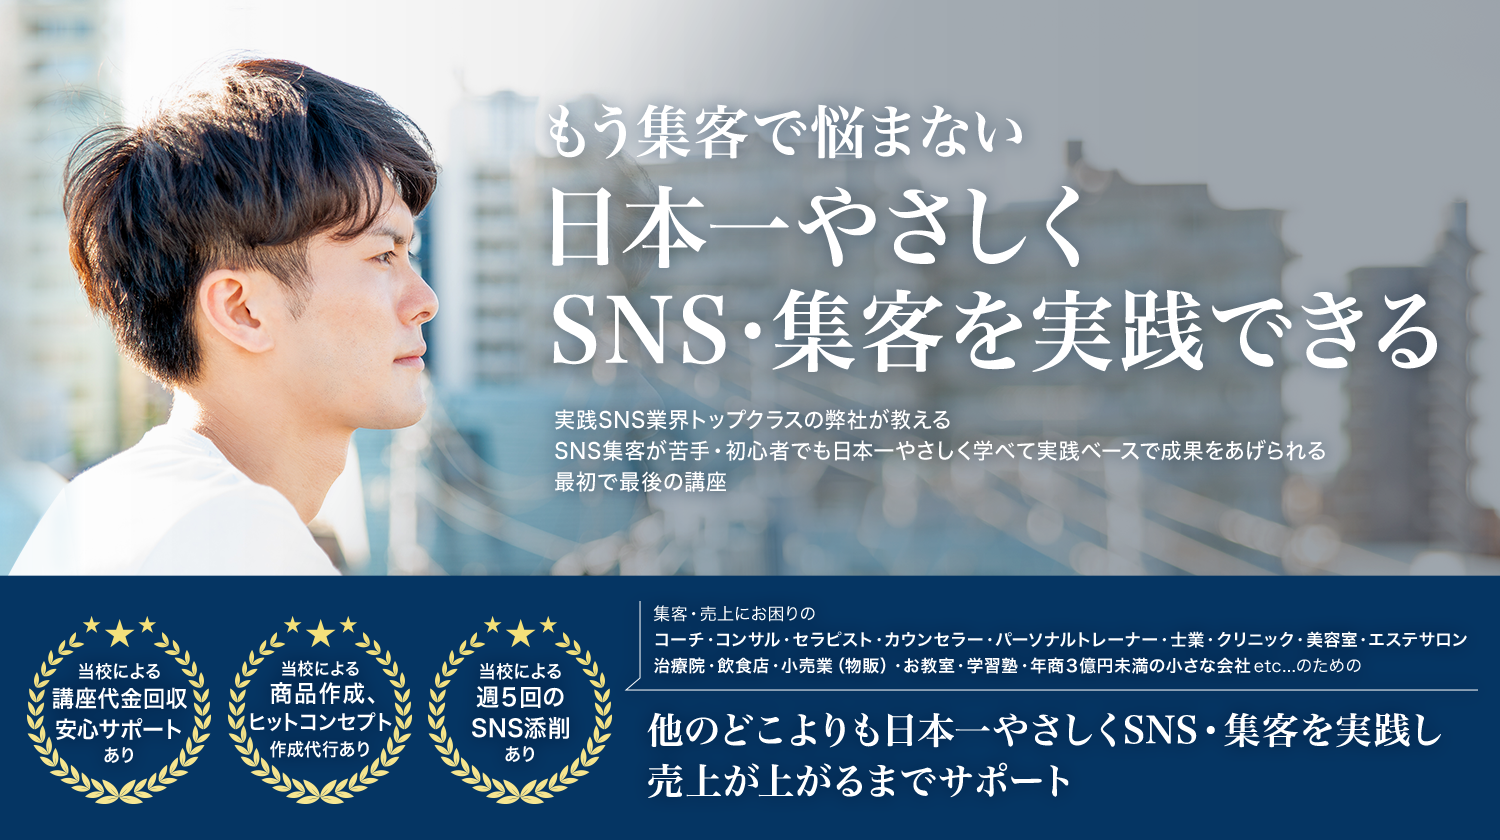 もう集客で悩まない日本一やさしくSNS・集客を実践できるタクスー-実践SNS集客学科-